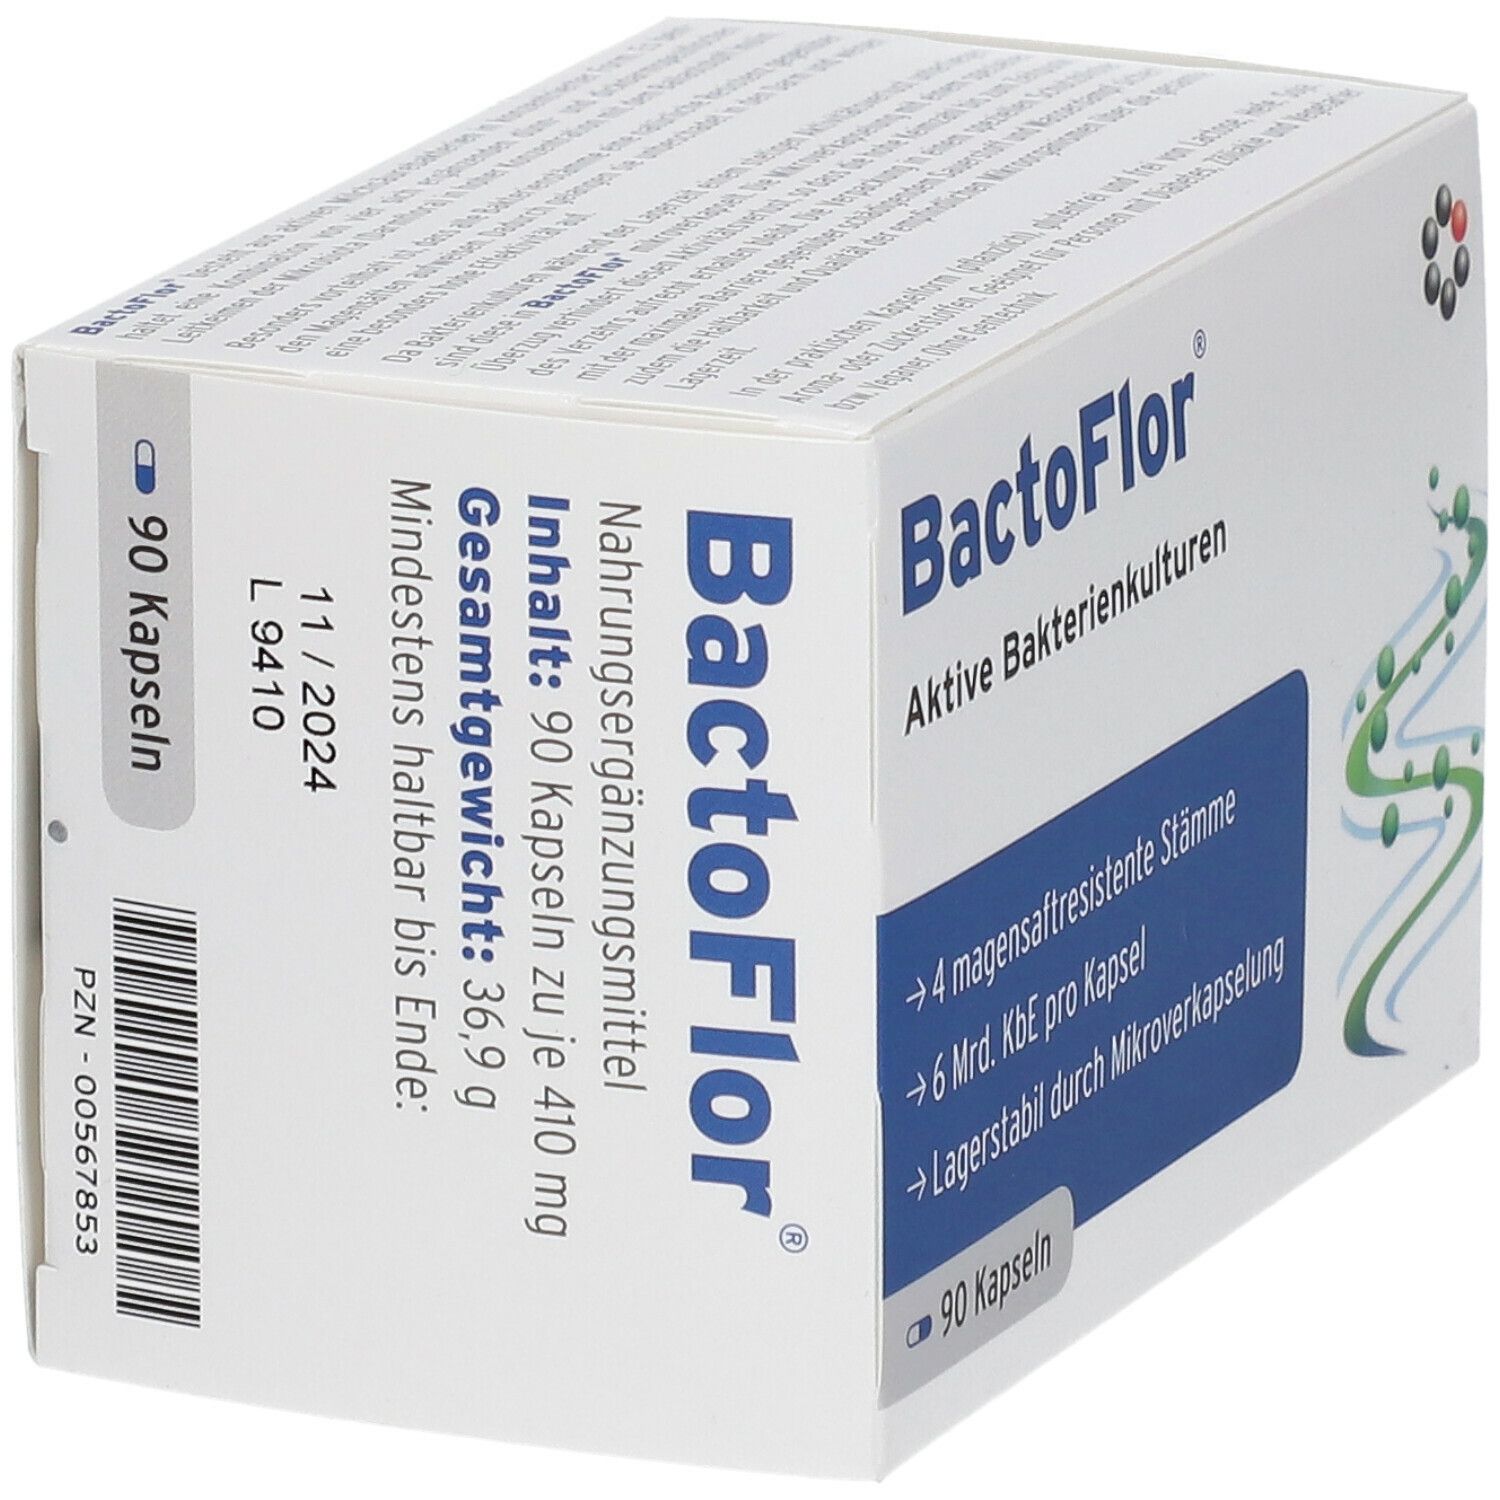 BactoFlor®